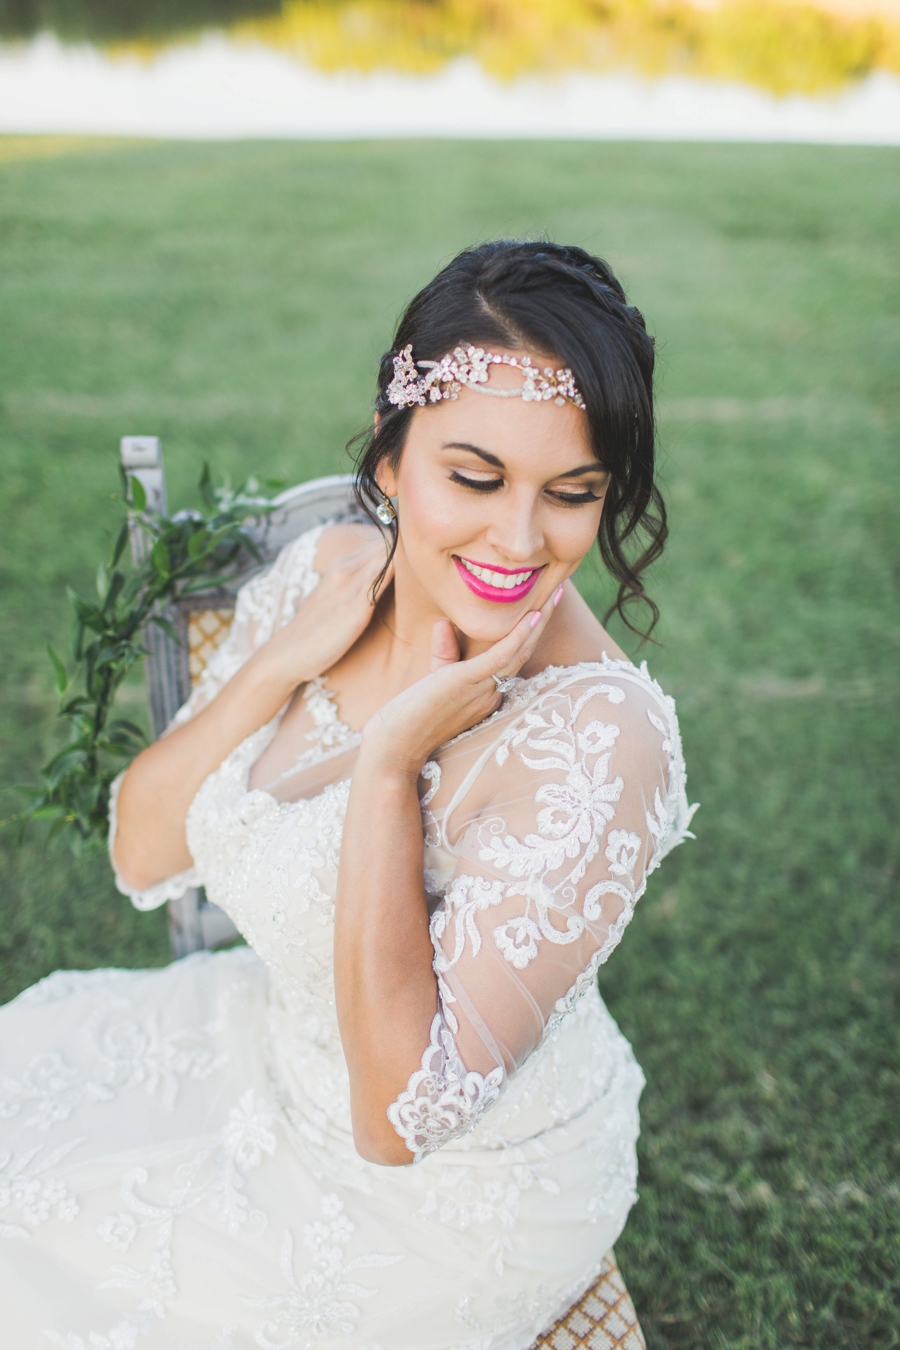 Pink Boho Wedding Ideas With a Southwest Flair via TheELD.com